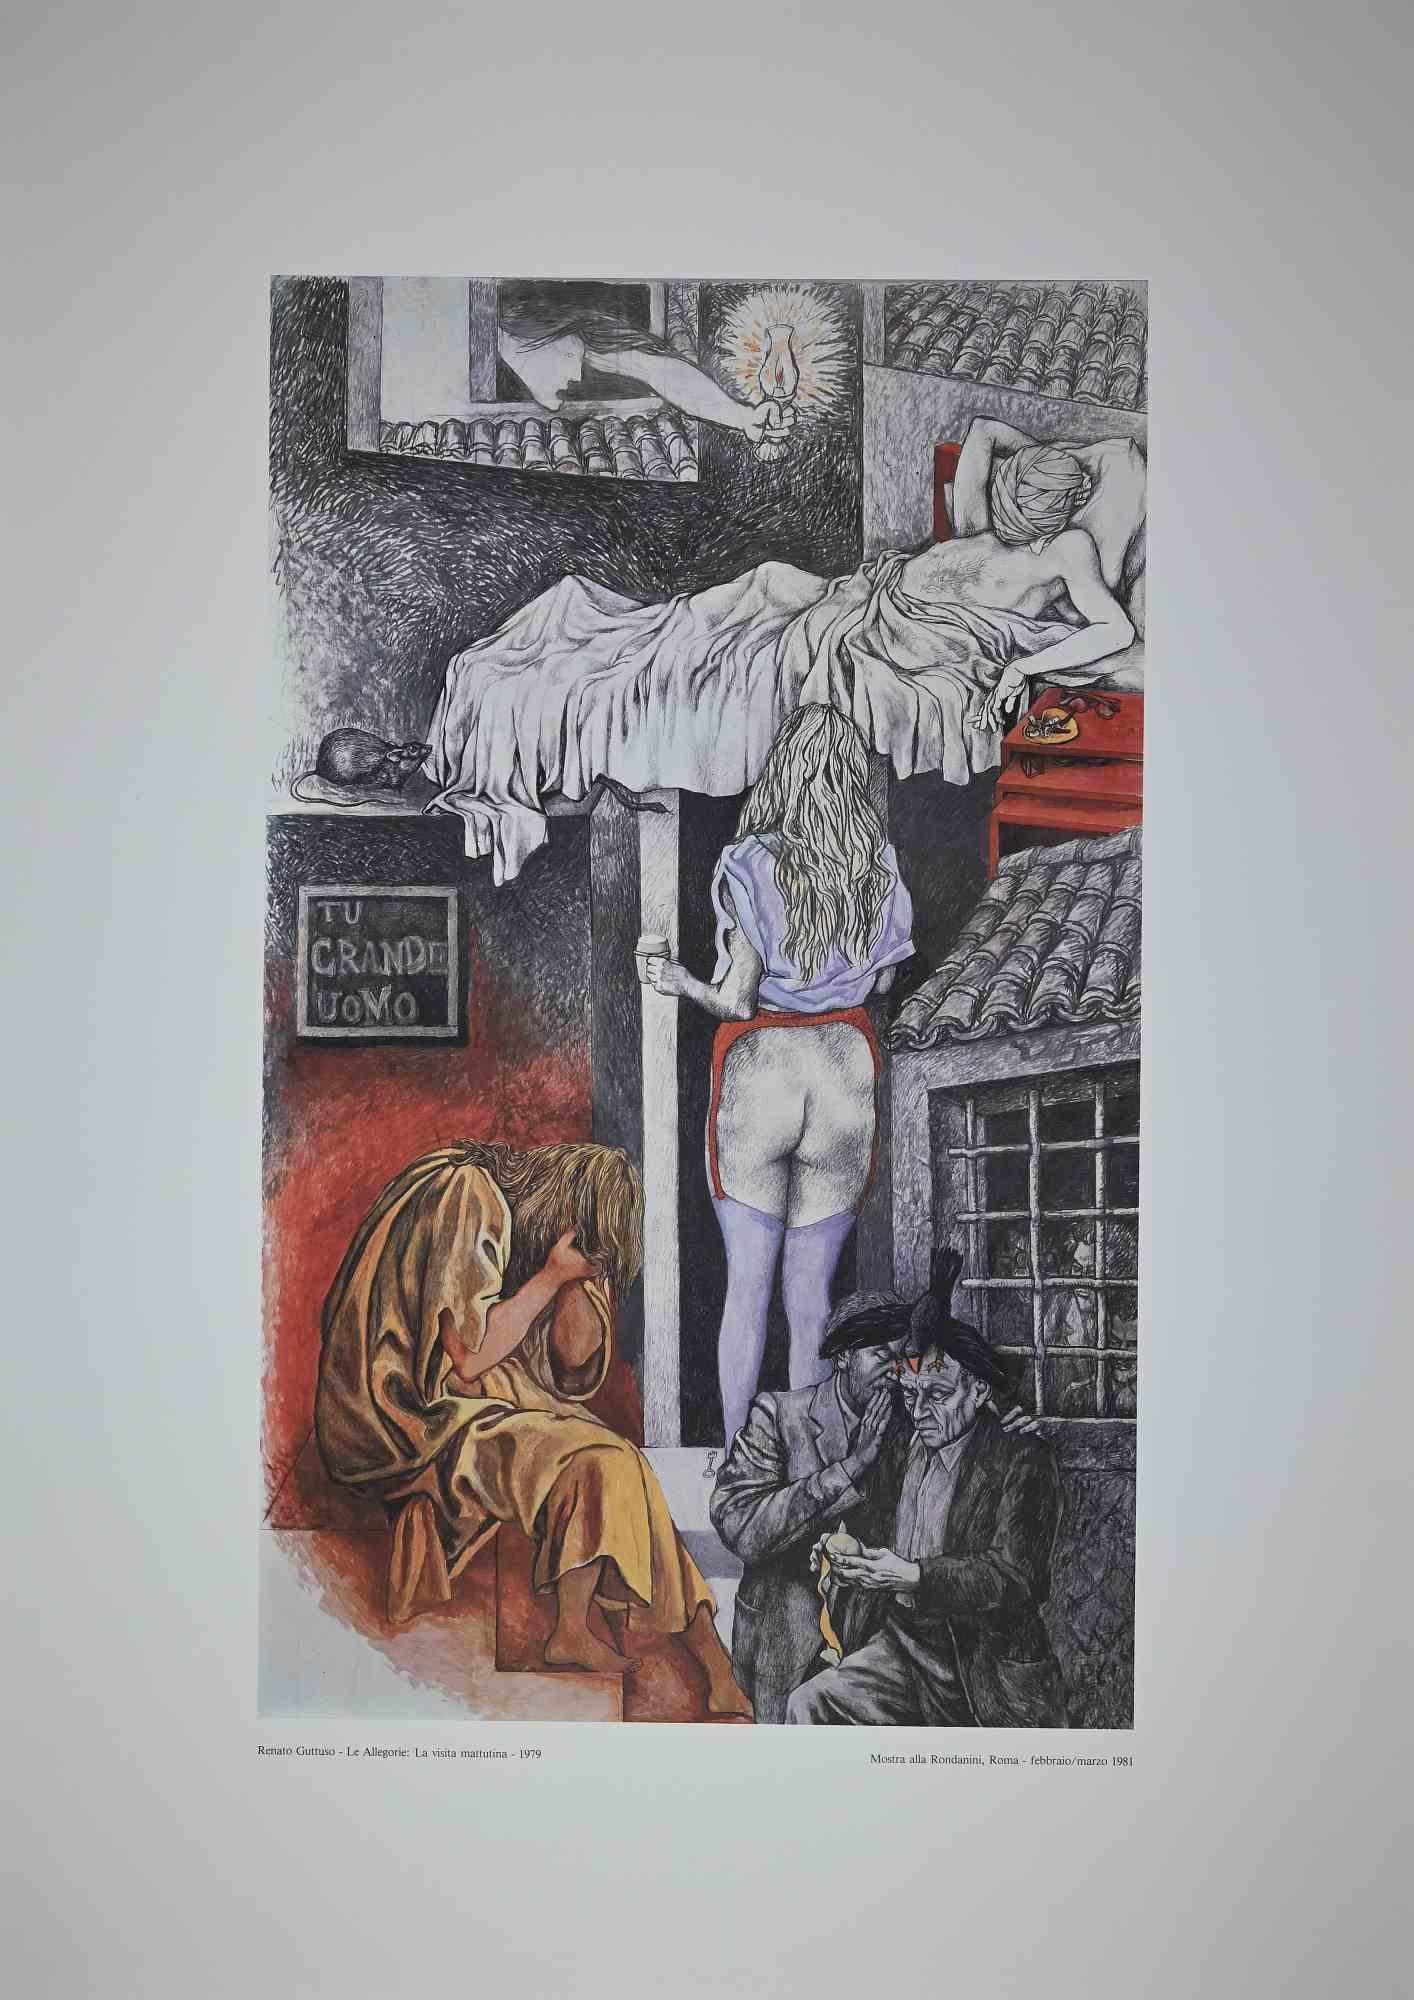 Allegorien: Der morgendliche Besuch ist ein originales zeitgenössisches Kunstwerk, das 1979 von dem italienischen Künstler Renato Guttuso (Bagheria, 1911 - Rom, 1987) geschaffen wurde.

Farbiger Original-Offsetdruck auf Papier. 

In der linken